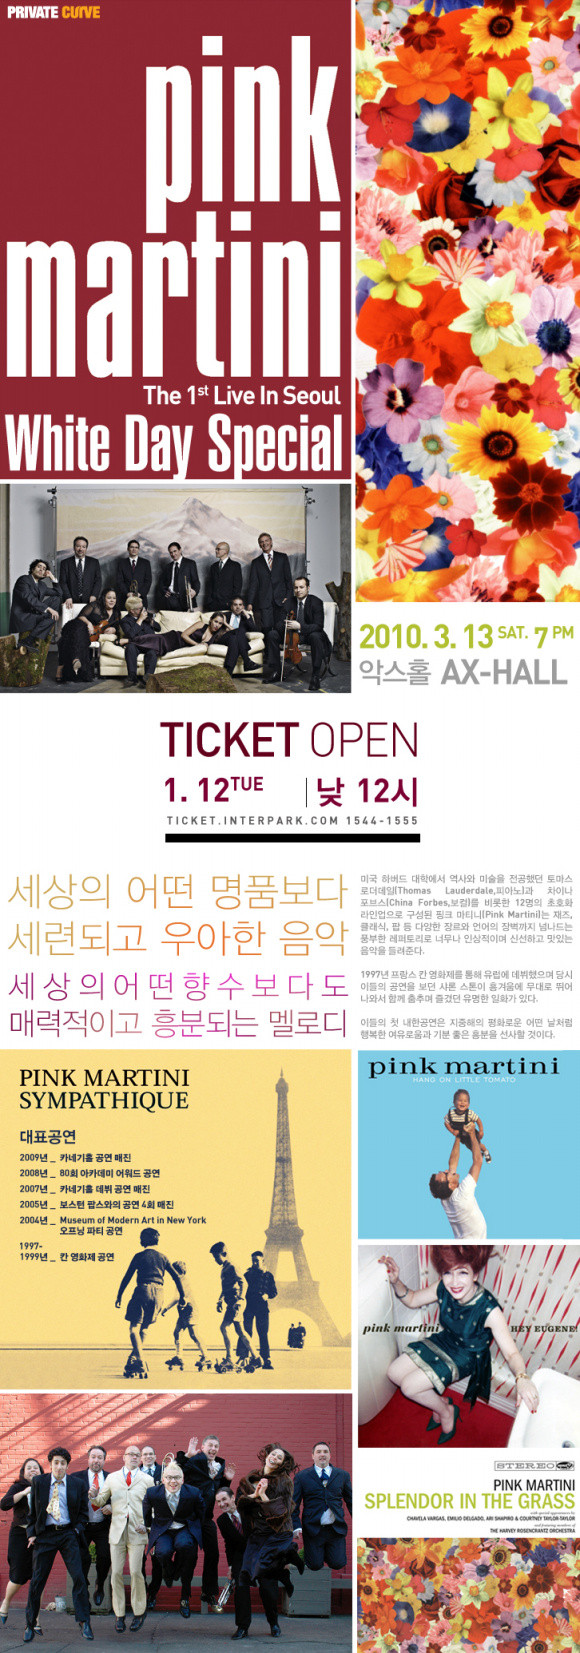 핑크 마티니(PINK MARTINI) 첫 내한공연 티켓오픈